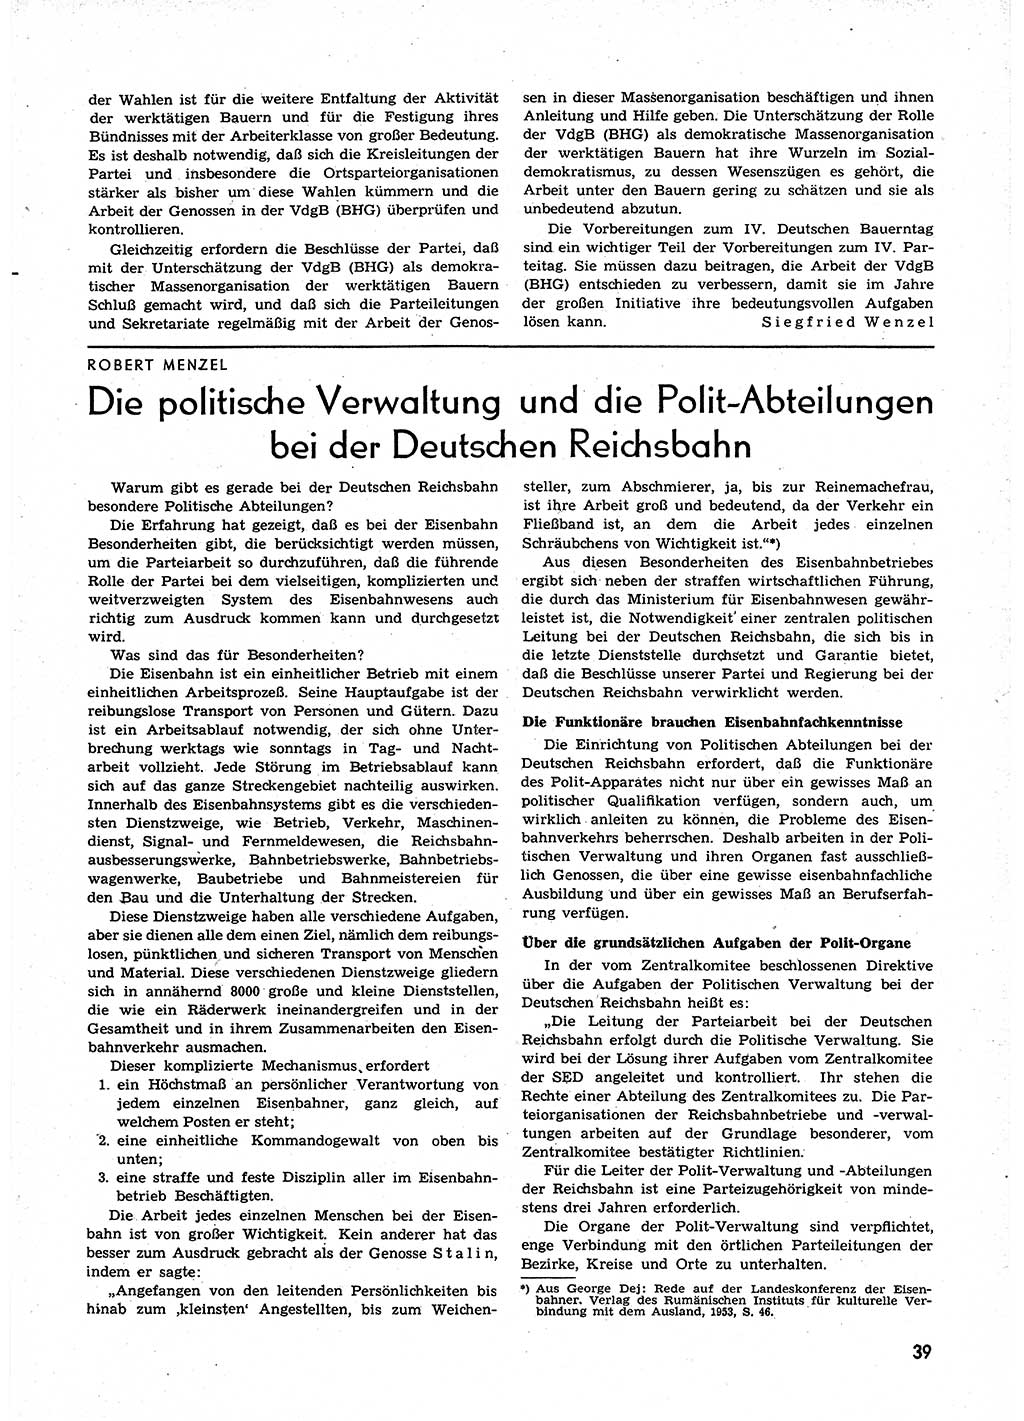 Neuer Weg (NW), Organ des Zentralkomitees (ZK) der SED (Sozialistische Einheitspartei Deutschlands) für alle Parteiarbeiter, 9. Jahrgang [Deutsche Demokratische Republik (DDR)] 1954, Heft 1/39 (NW ZK SED DDR 1954, H. 1/39)